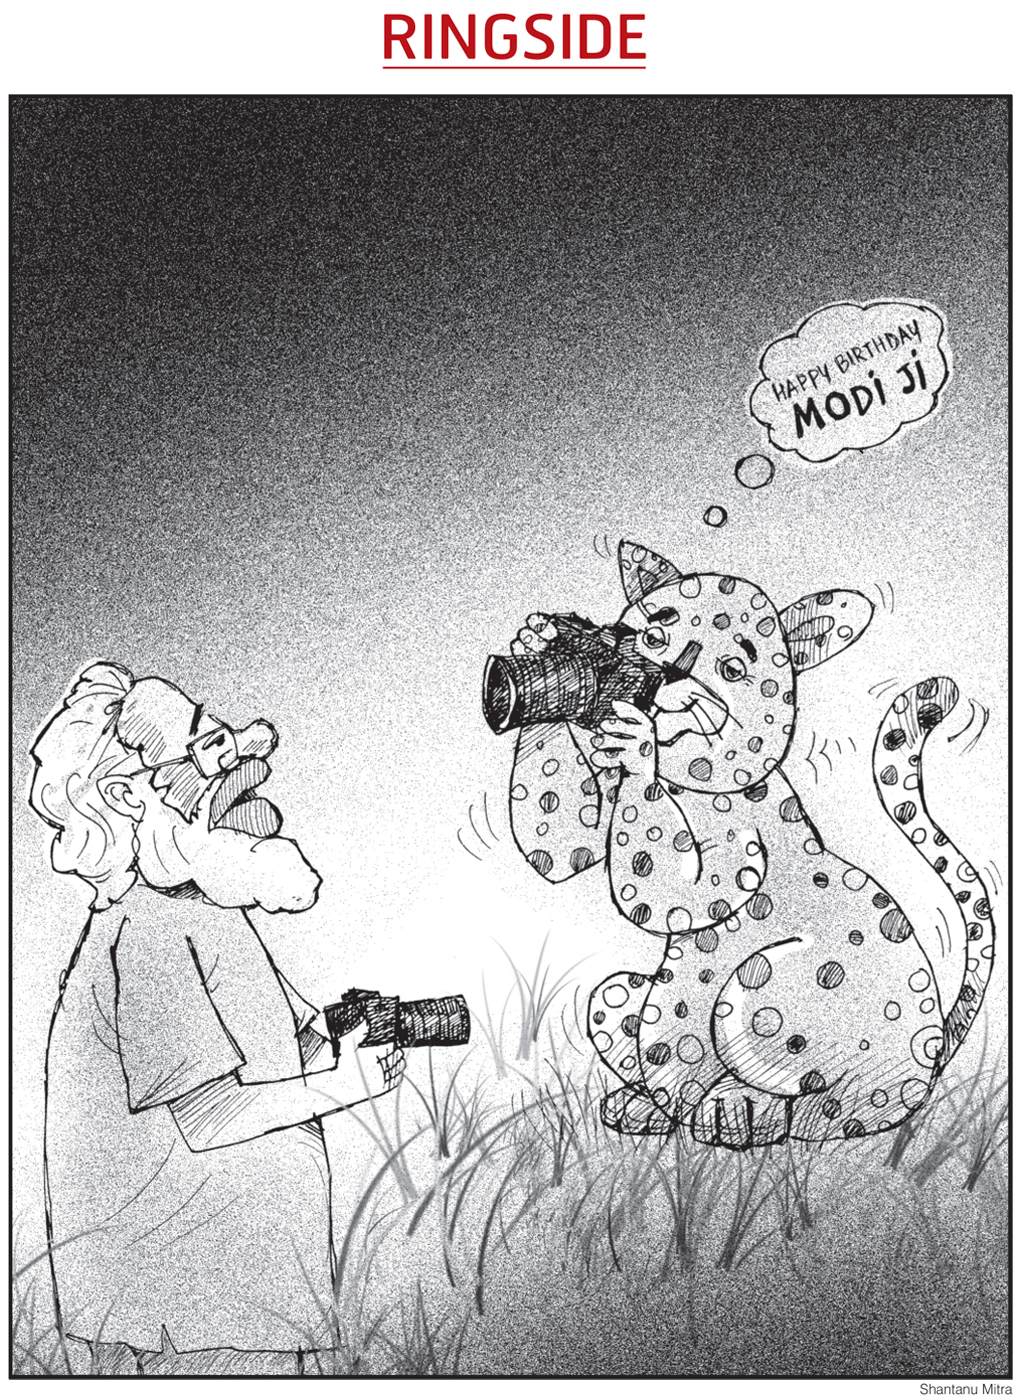 Narendra Modi cheetahs